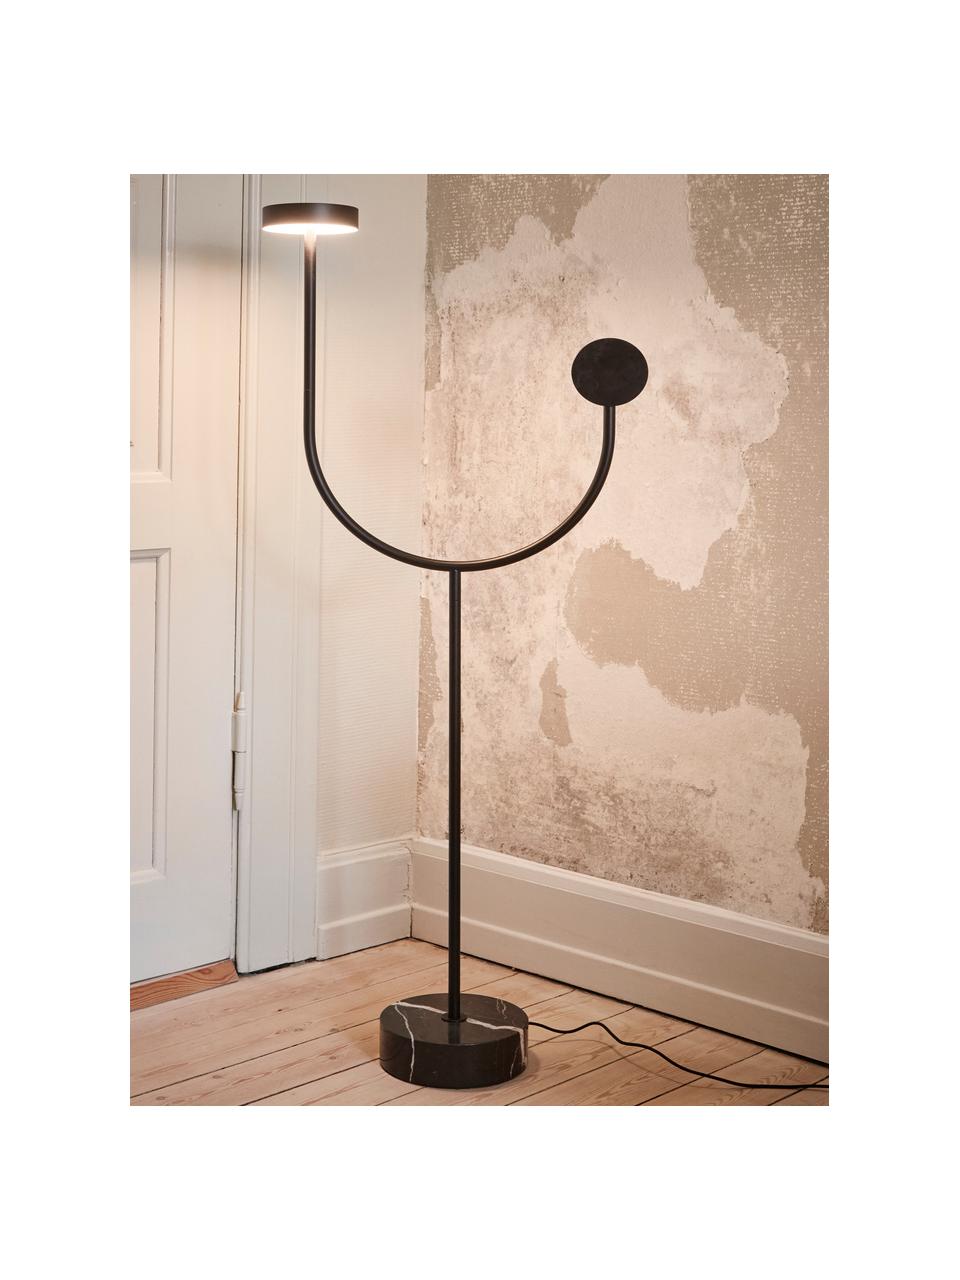 Malá stojaca LED lampa z mramoru Grasil, Mramorovaná čierna, V 128 cm